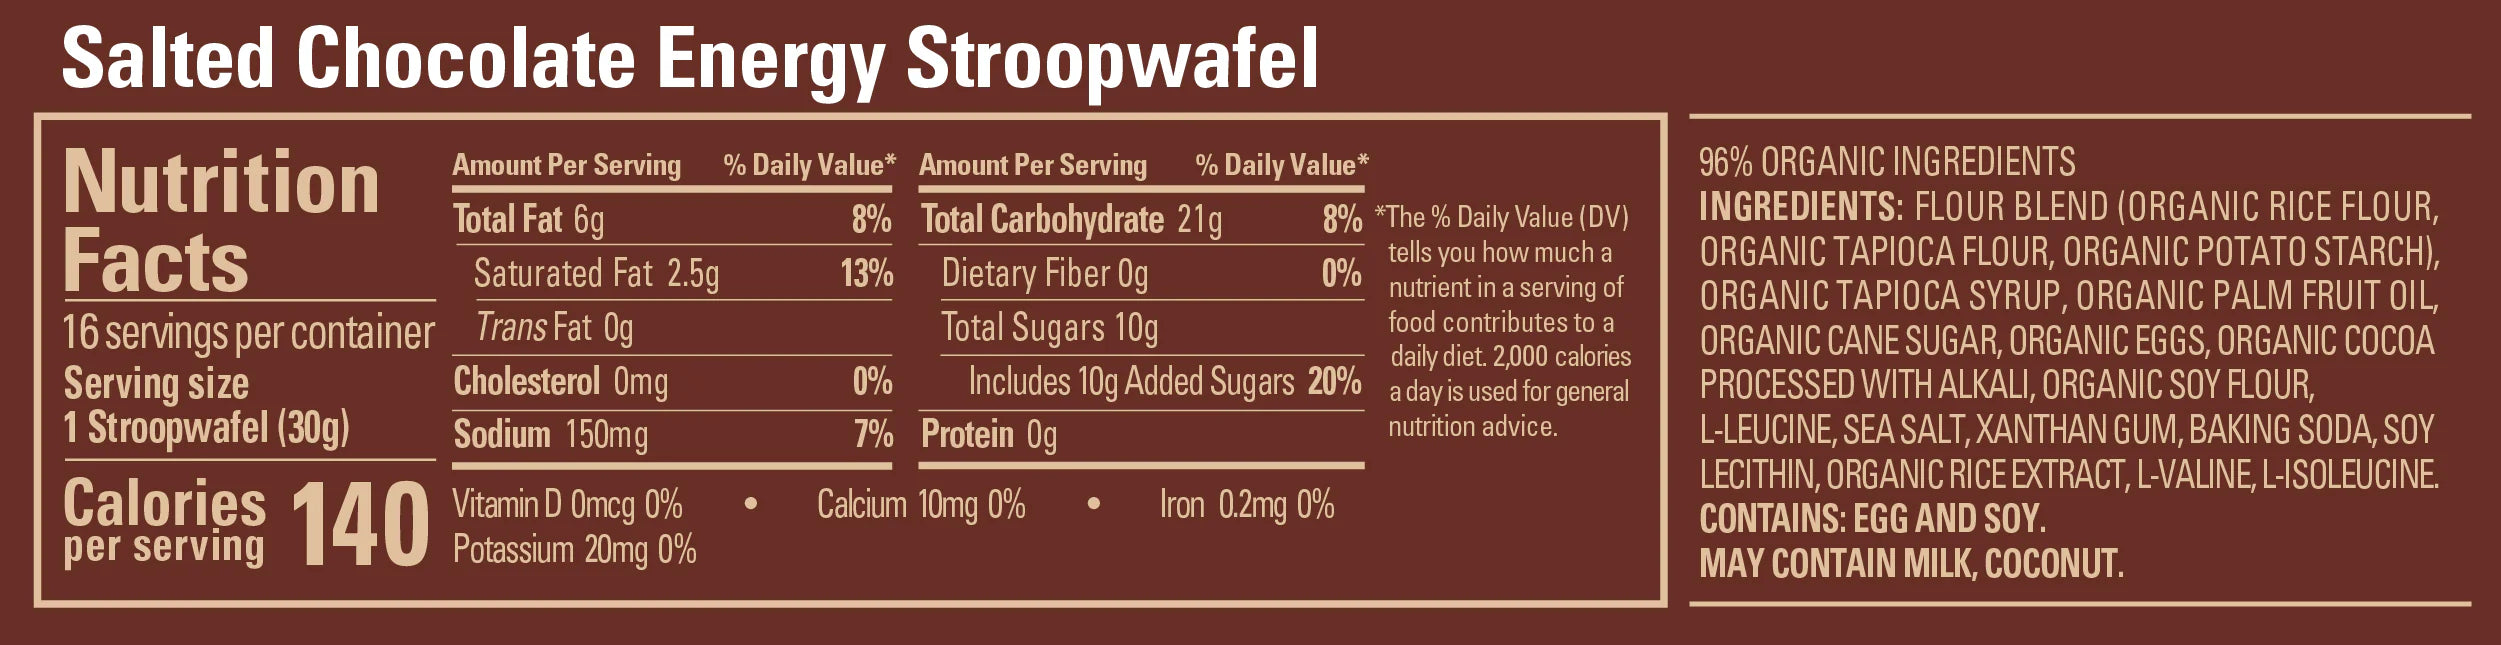 GU Stroopwafel - Salted Chocolate (4pk)